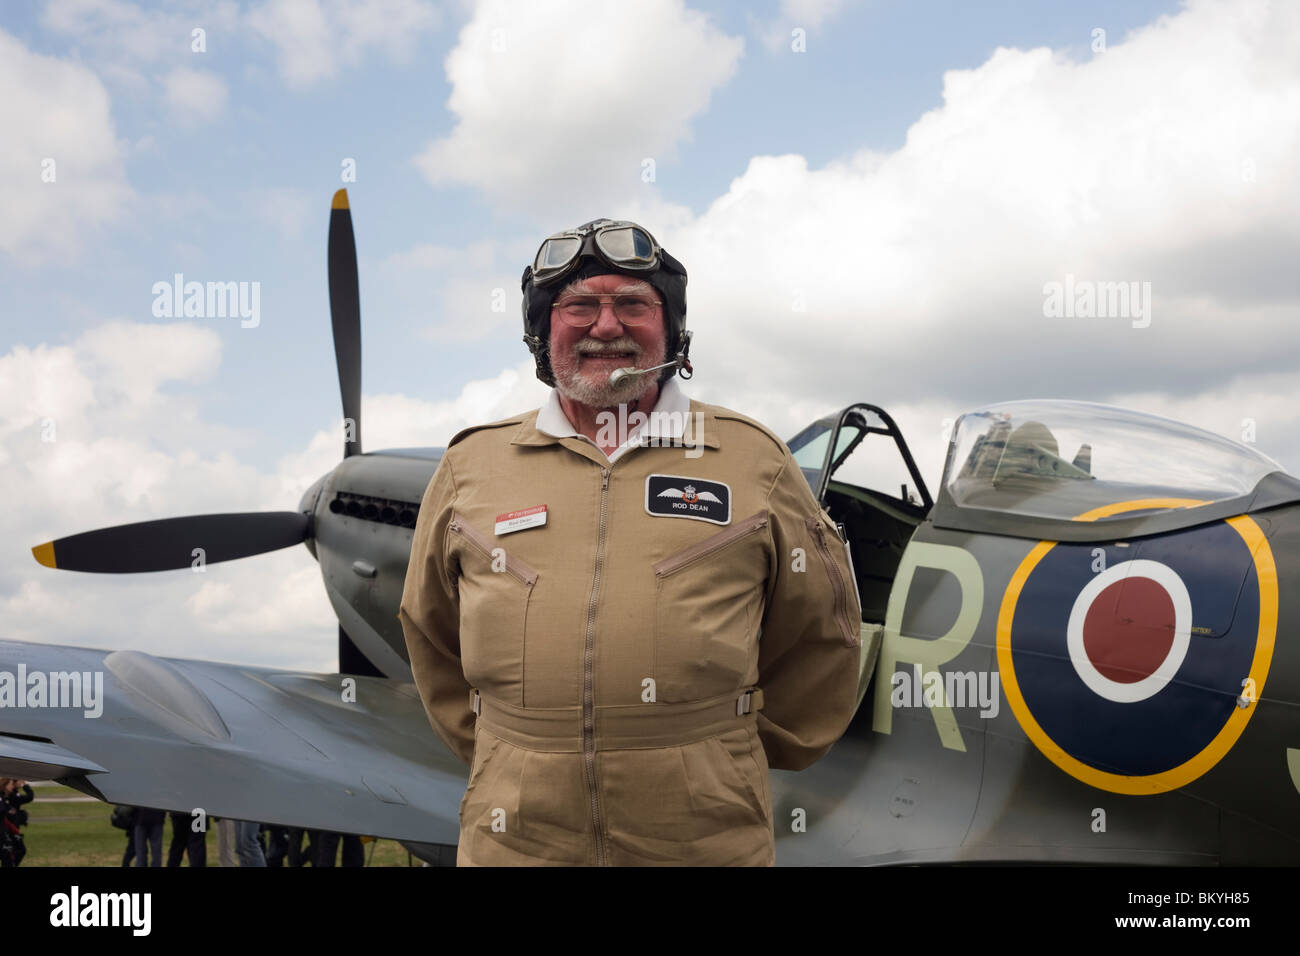 Farnborough International Airshow Flight Operations Director Rod Dean stellt neben einer Spitfire, die er gerade eingeflogen wurde. Stockfoto